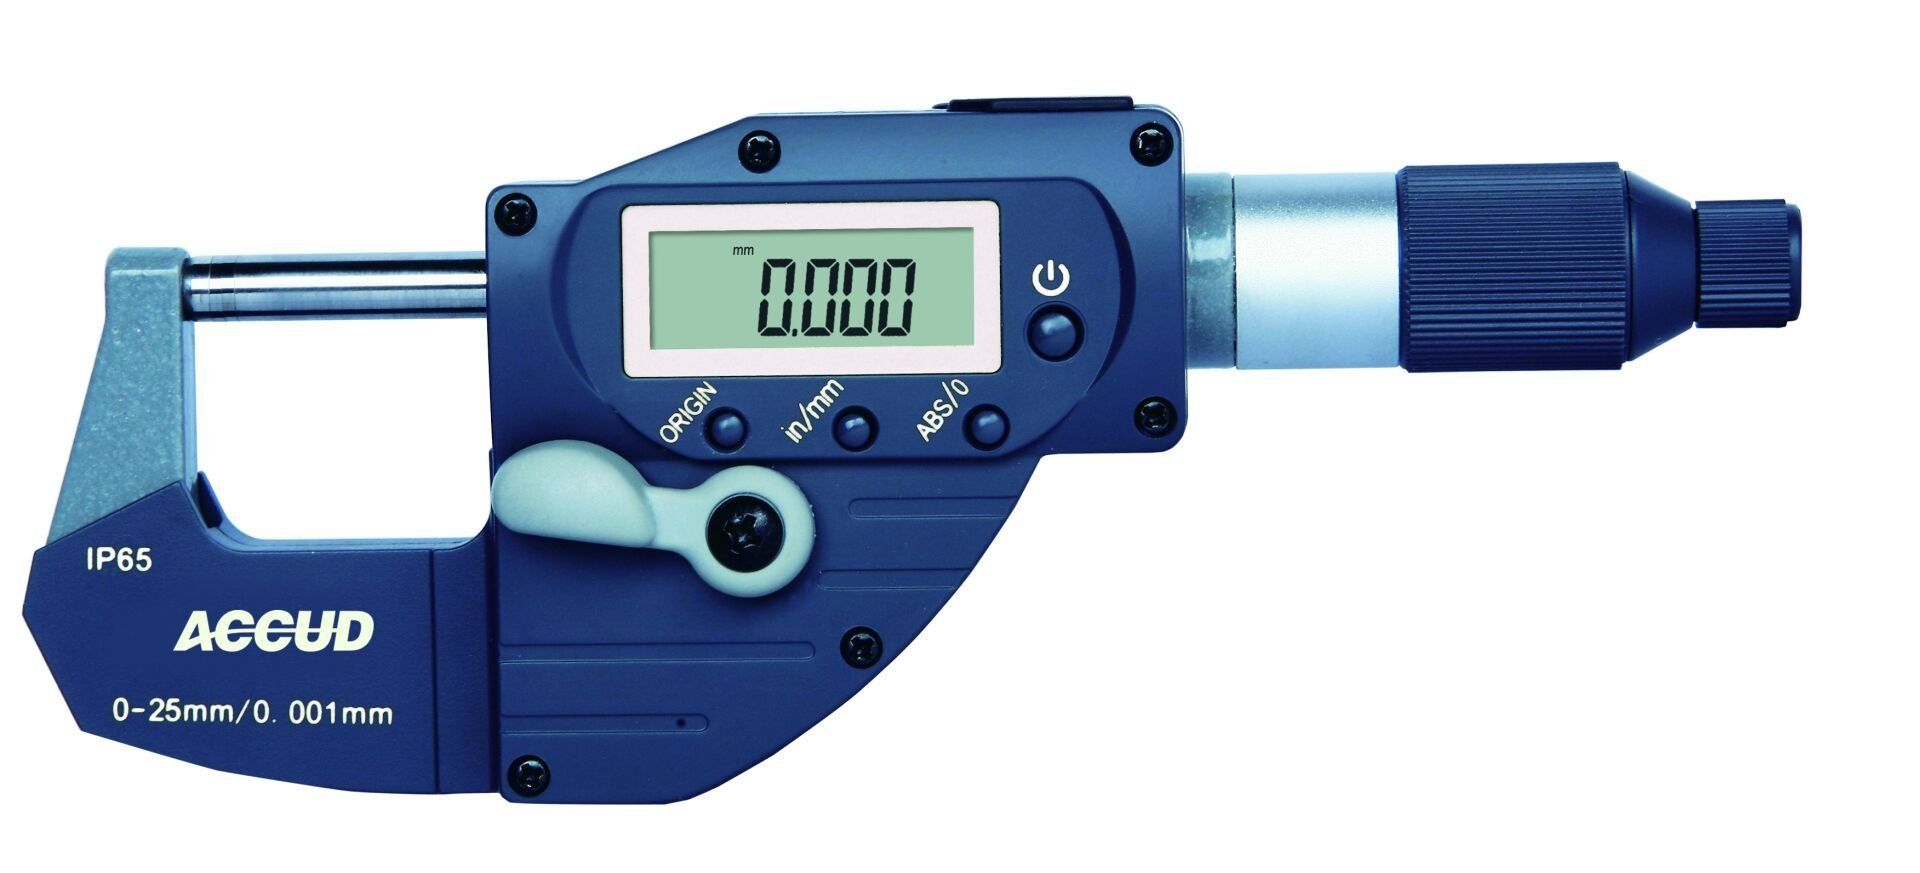 Accud Dijital Mikrometre 314 Serisi - Hızlı Ölçüm 0-25 mm